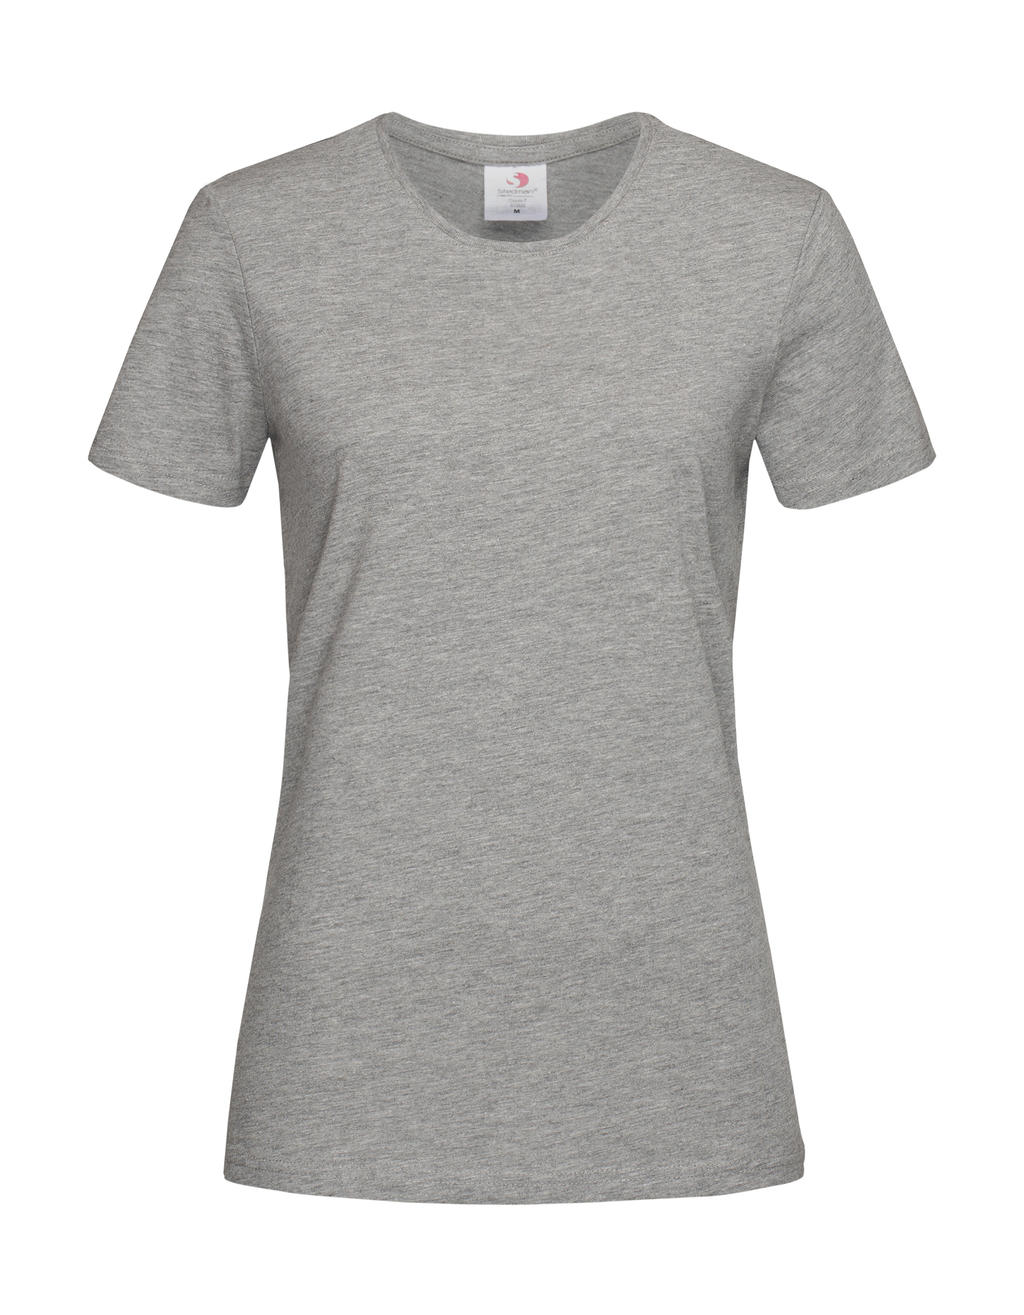 Tričko dámské Stedman Fitted s kulatým výstřihem - šedé-bílé, L